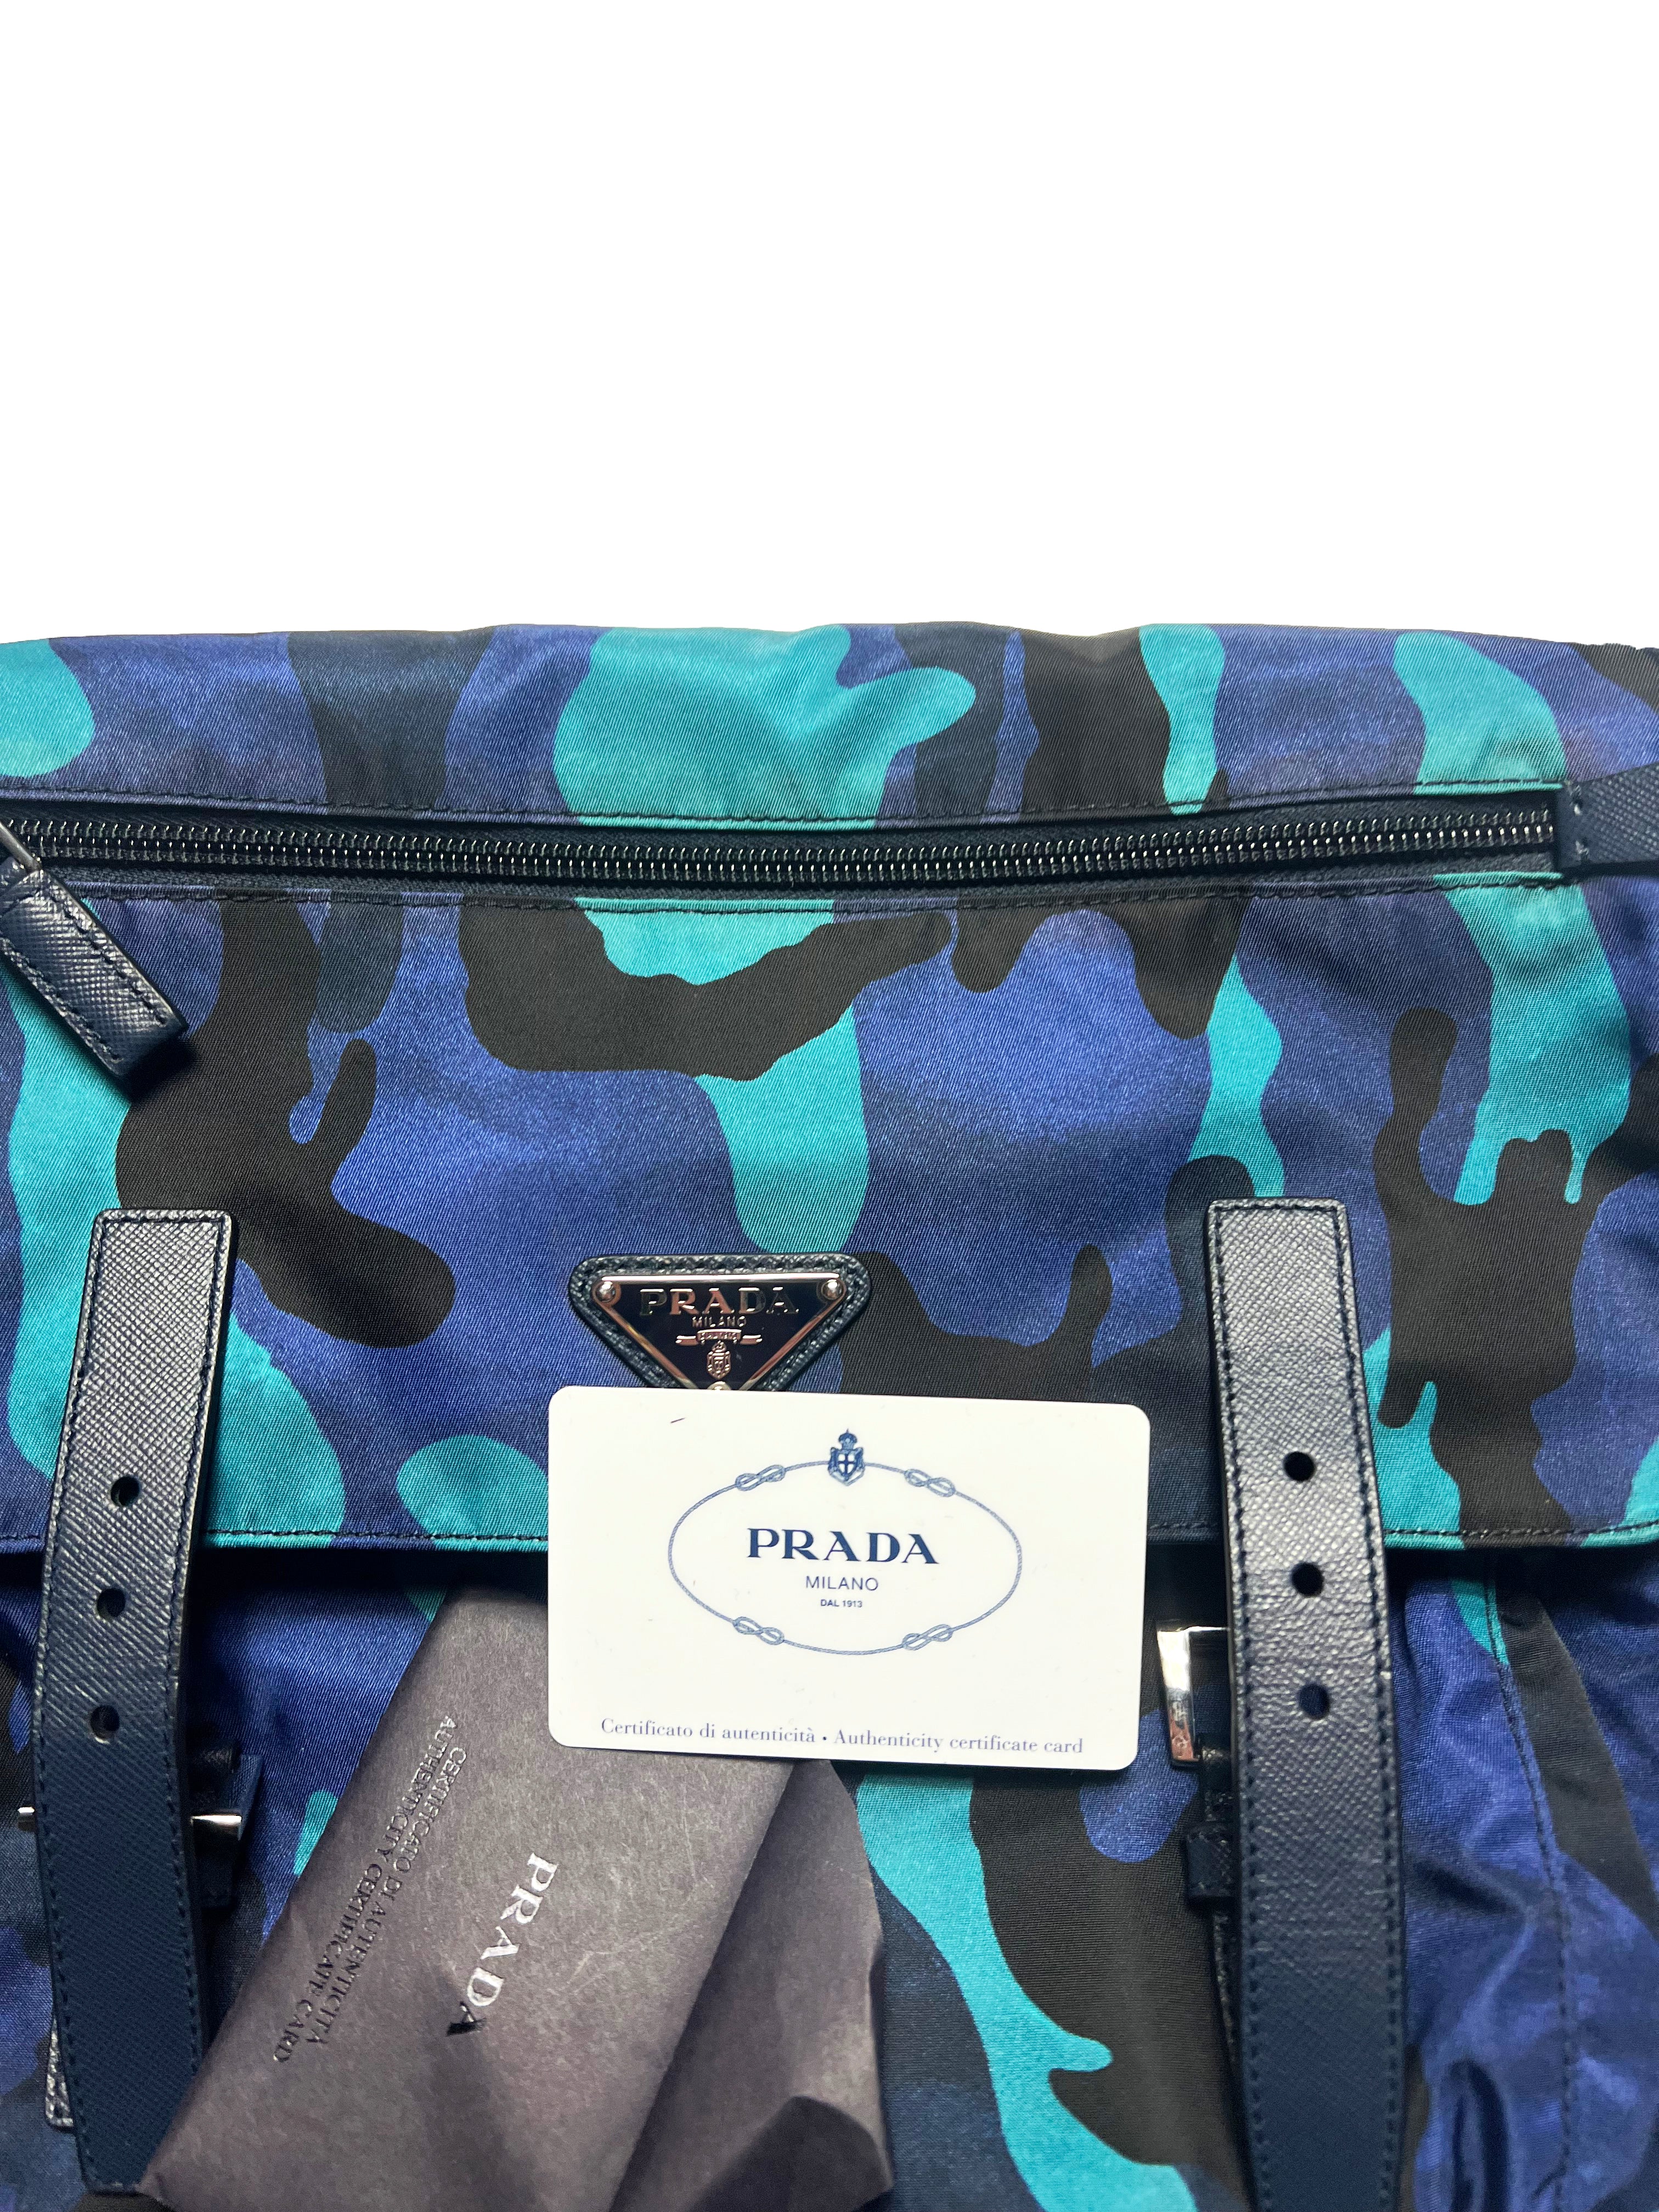 Prada Milano Blue Camo Side Bag 2017